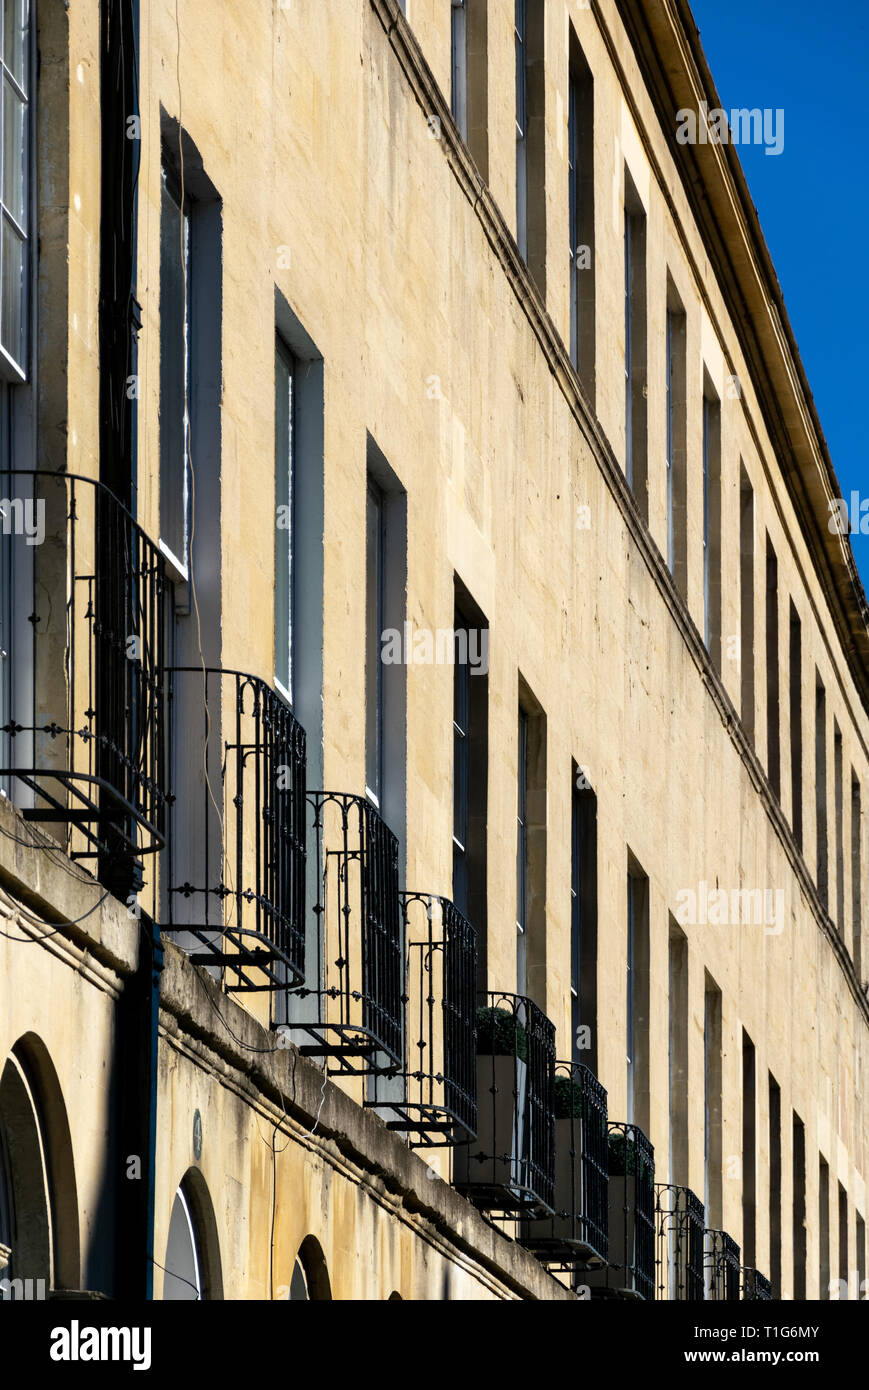 La façade de la terrasse maisons de la rue Johnstone baignoire montrant le fer forgé balconettes Banque D'Images